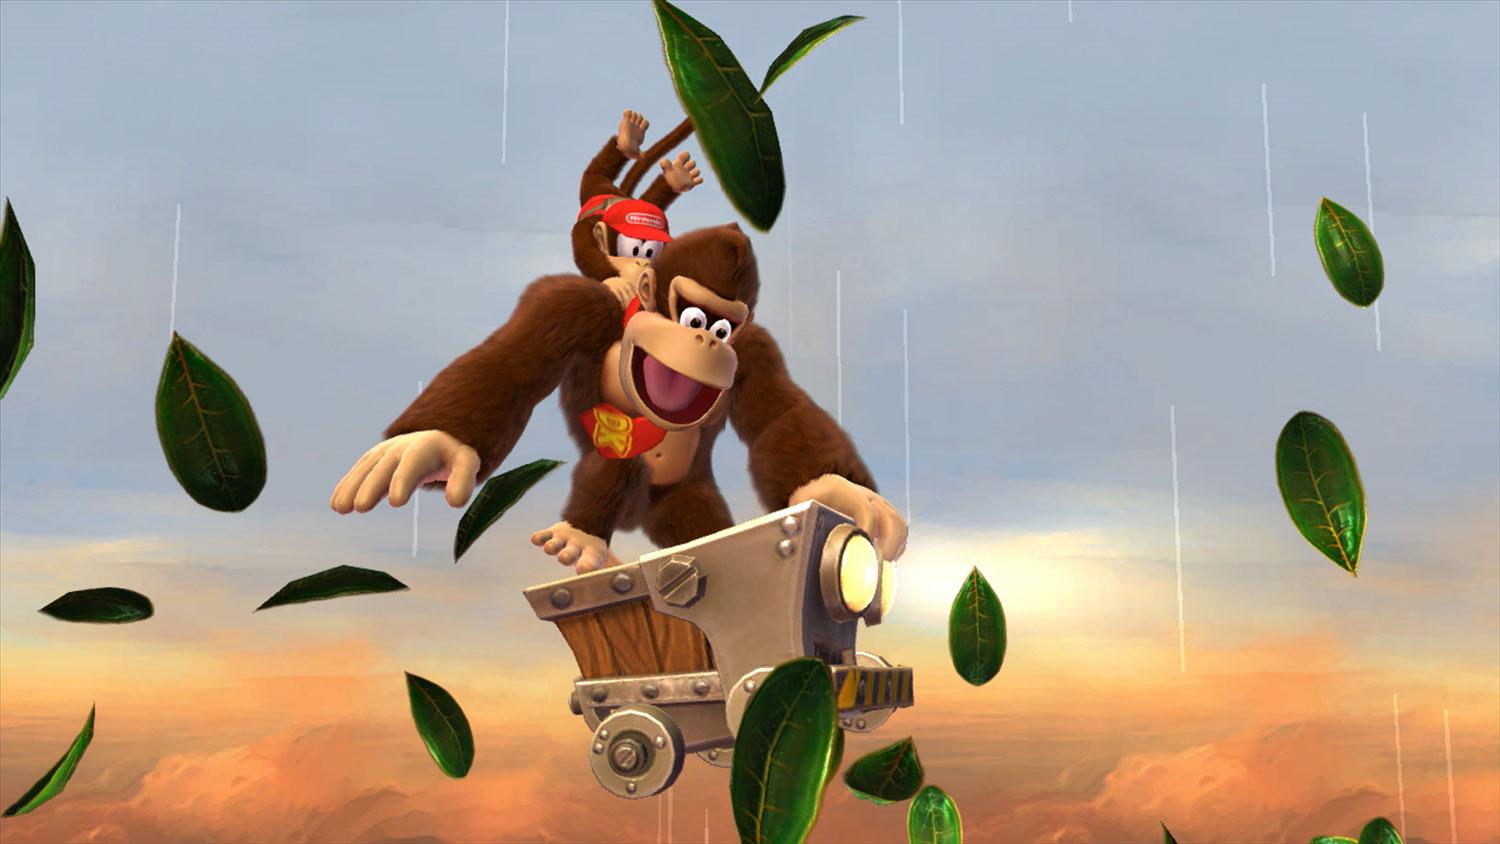 Donkey Kong Country Tropical Freeze Edición Estándar para Nintendo